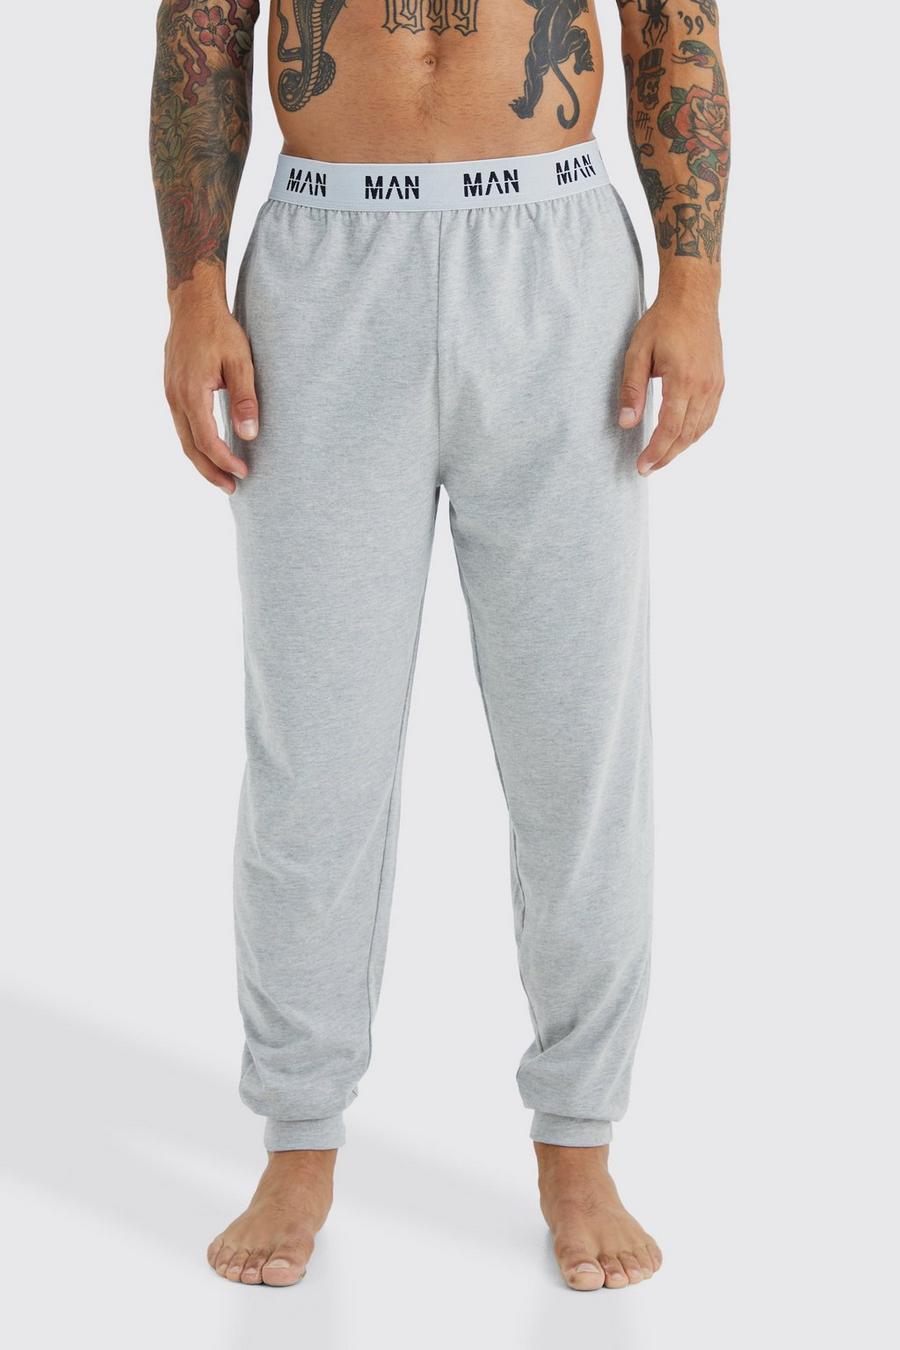 Pantalón deportivo MAN para estar en casa, Grey grigio